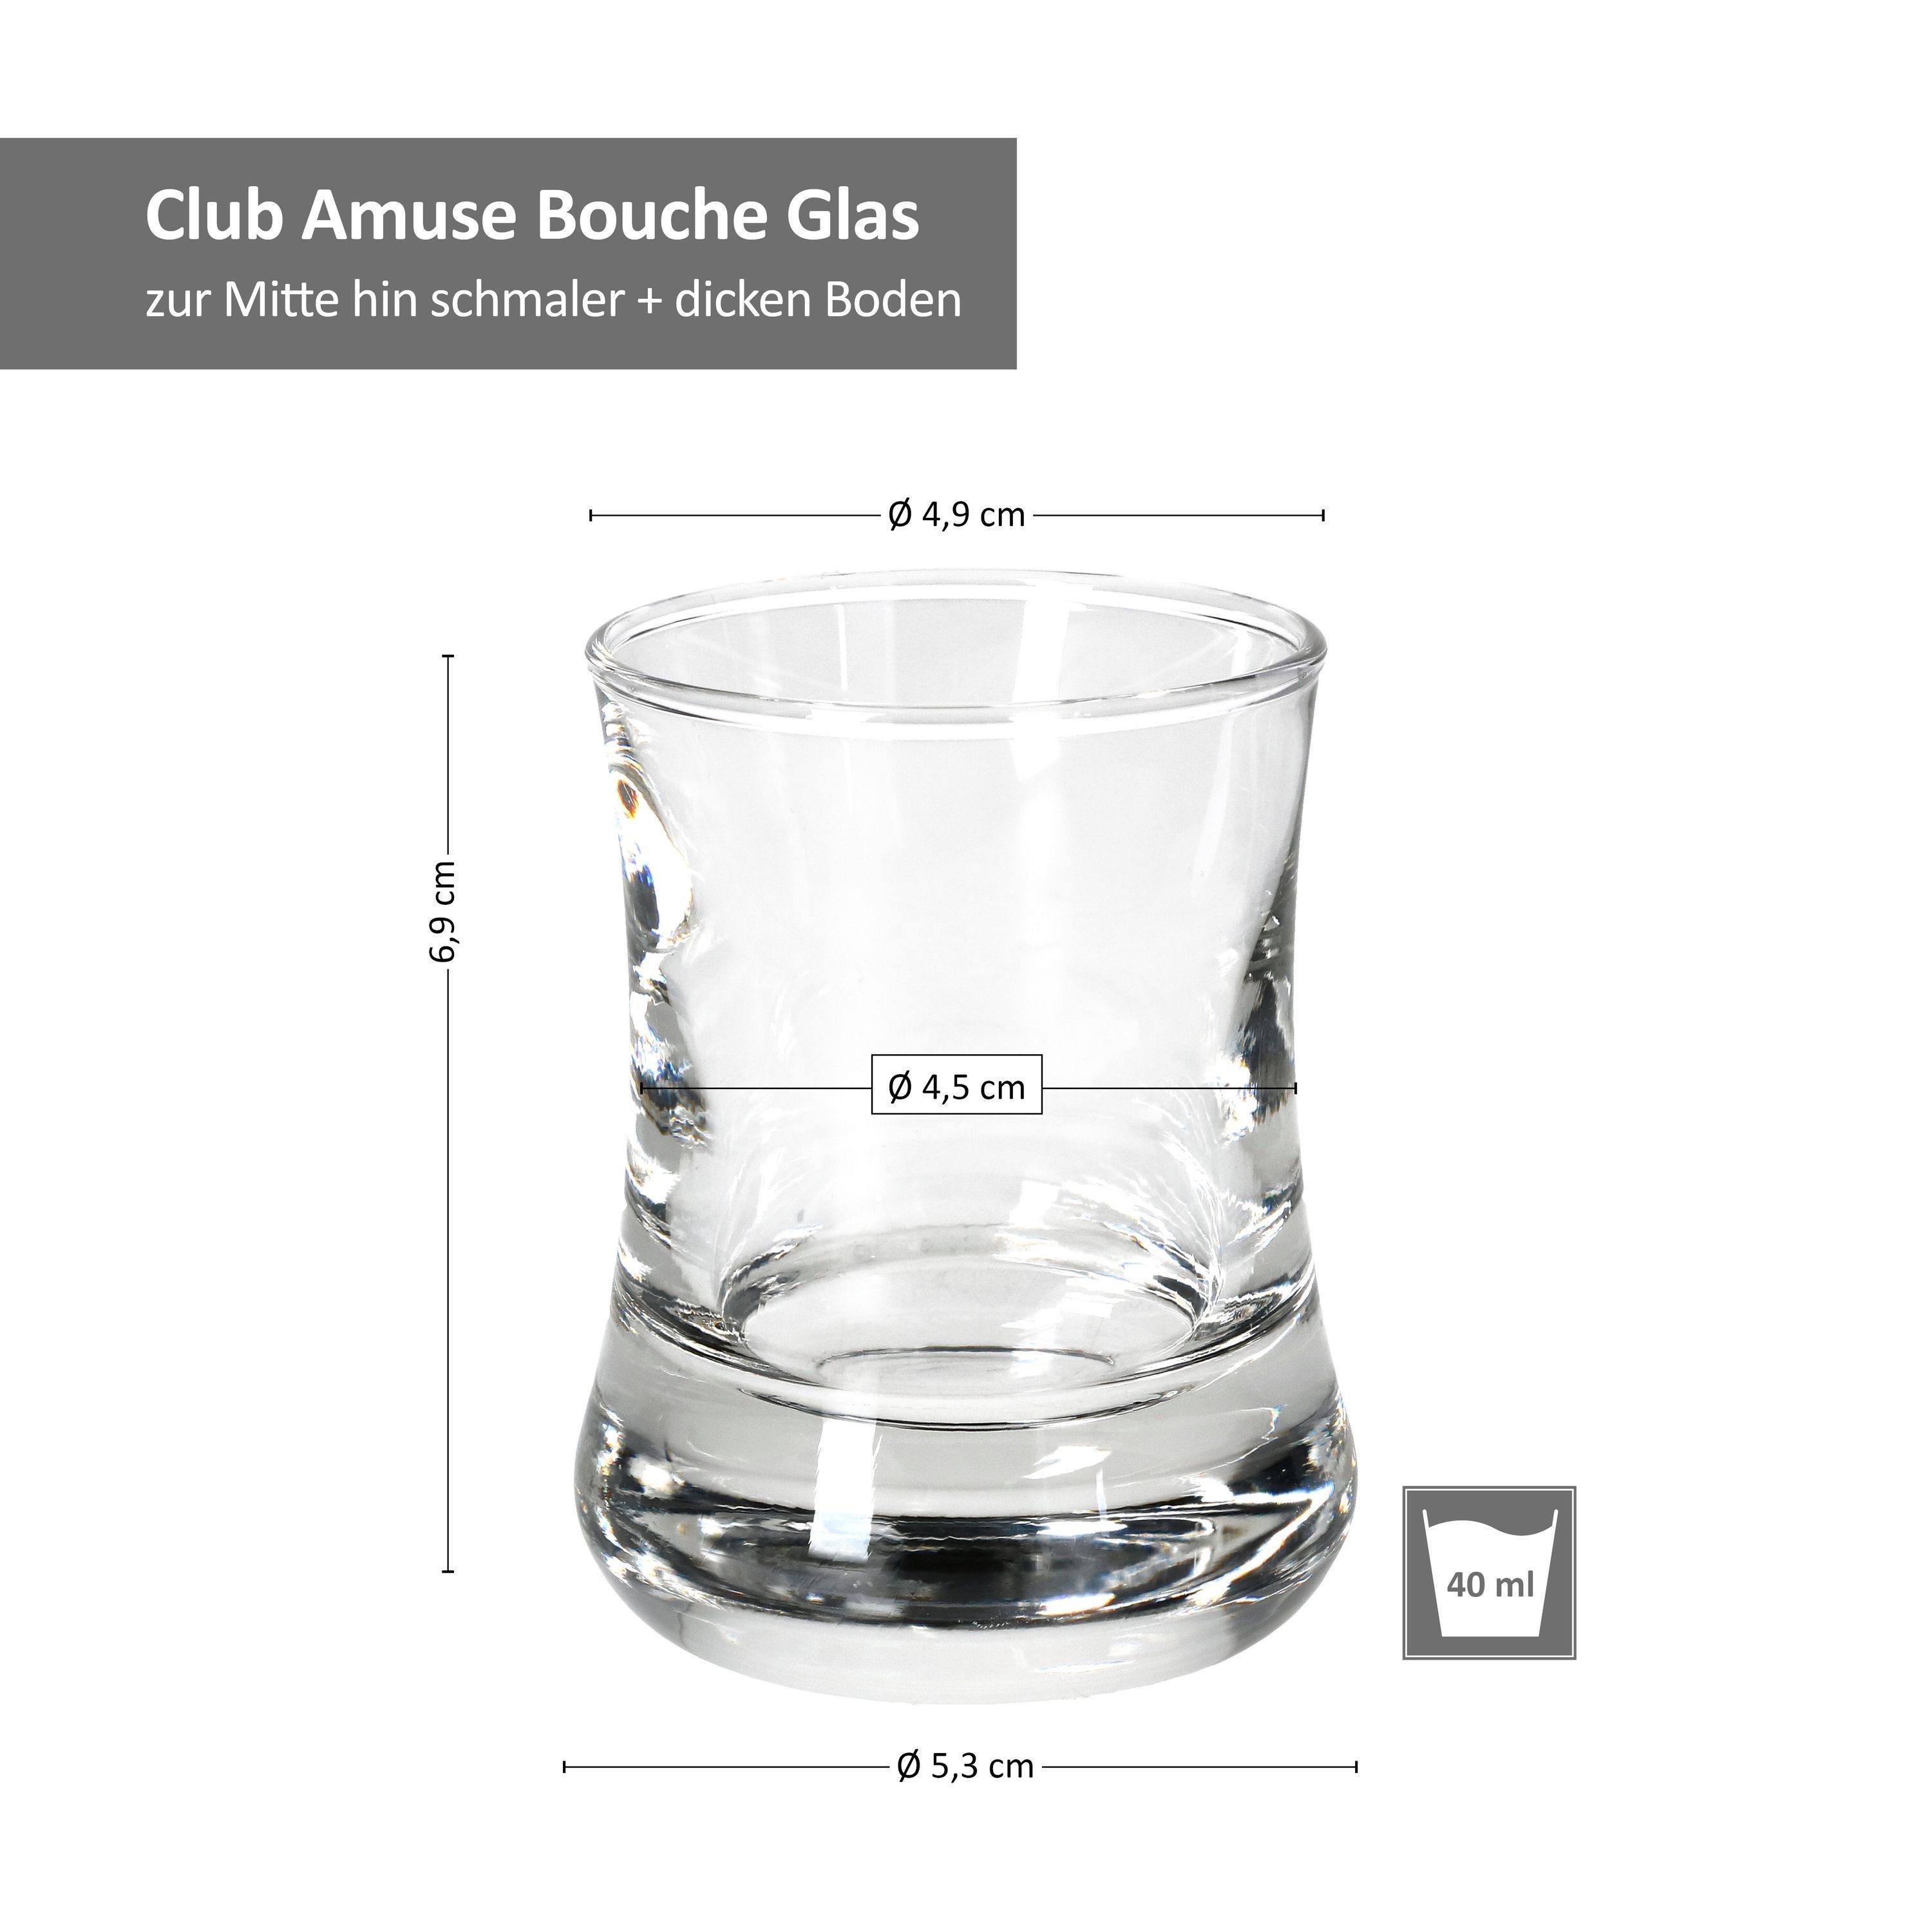 MamboCat Glas 6er Club Amuse Bouche 6cl, Set Glas